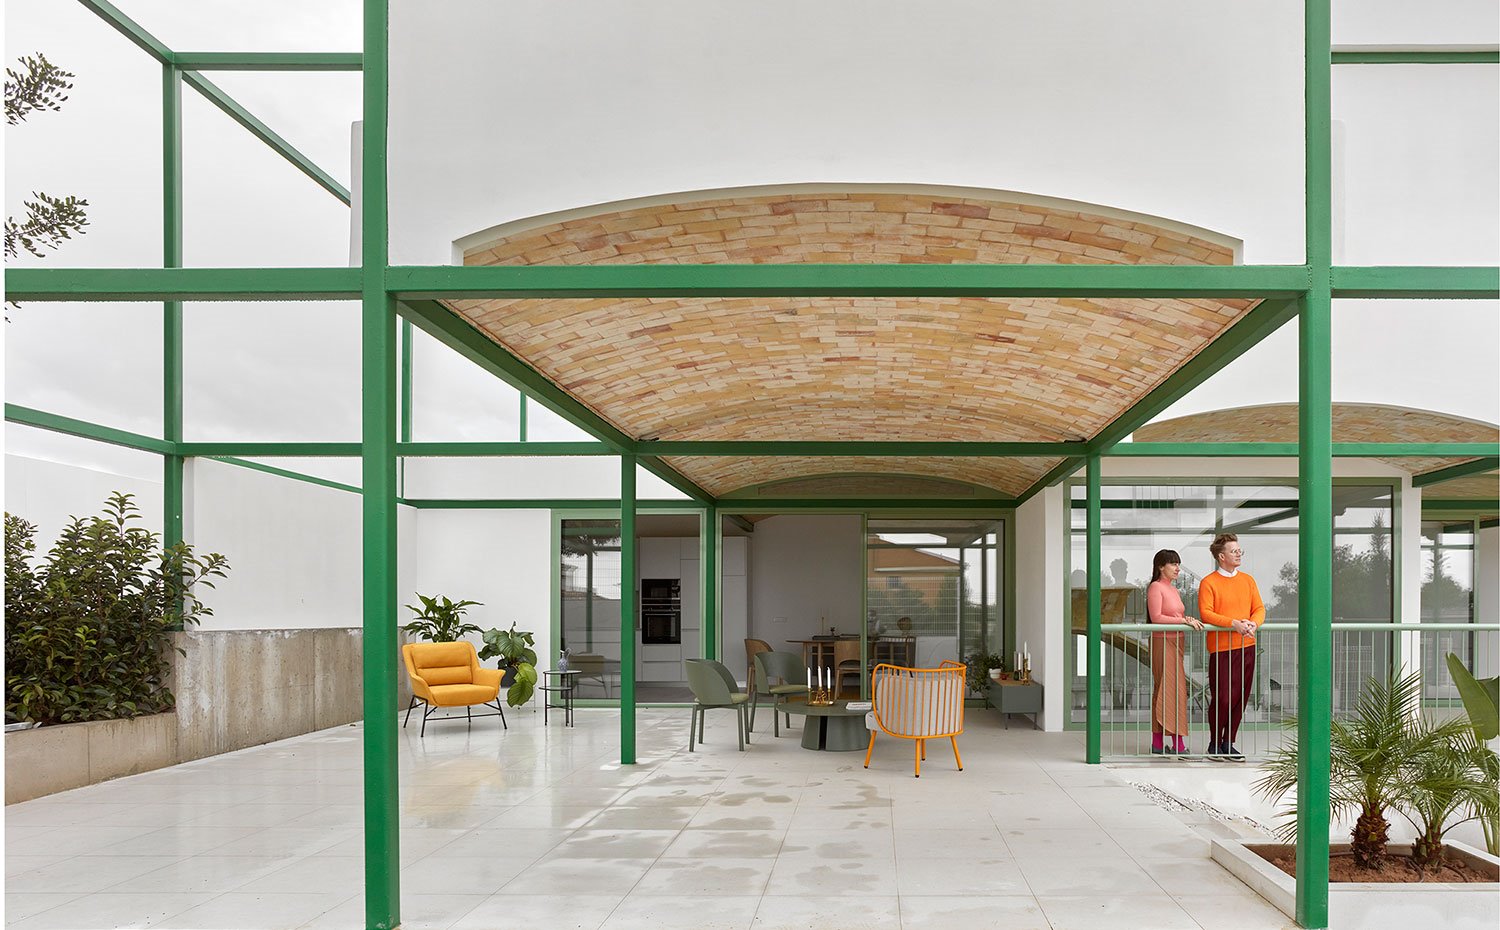 Exterior de terraza con suelo de baldosas grises en contraste con el color naranja y verde del mobiliario exterior